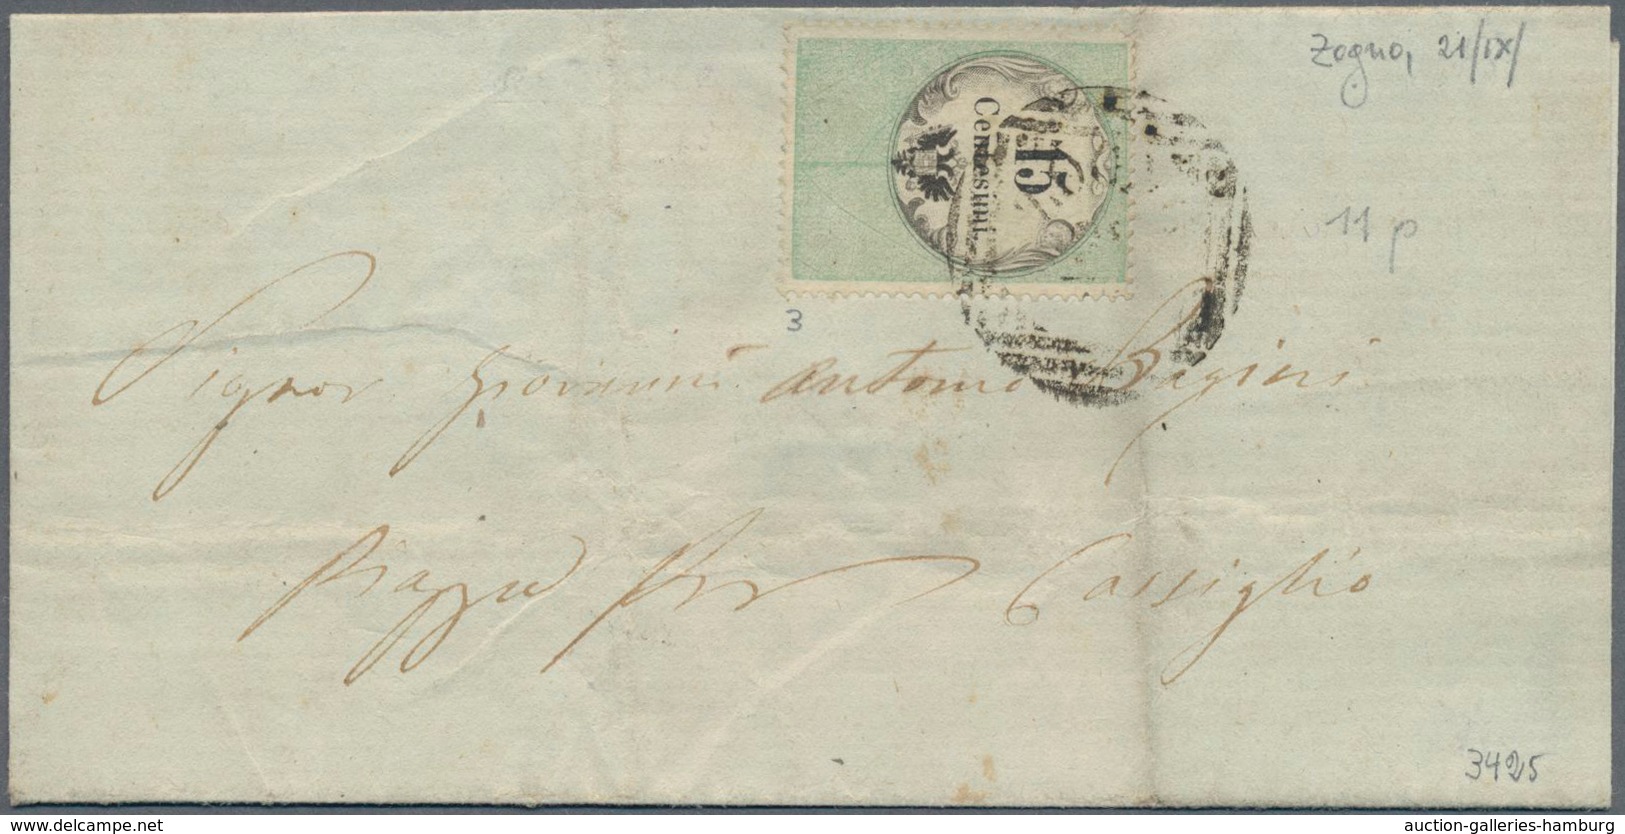 Österreich - Lombardei Und Venetien - Stempelmarken: 1854, 15 C Grün/schwarz EF Entwertet Mit Dem Se - Lombardy-Venetia